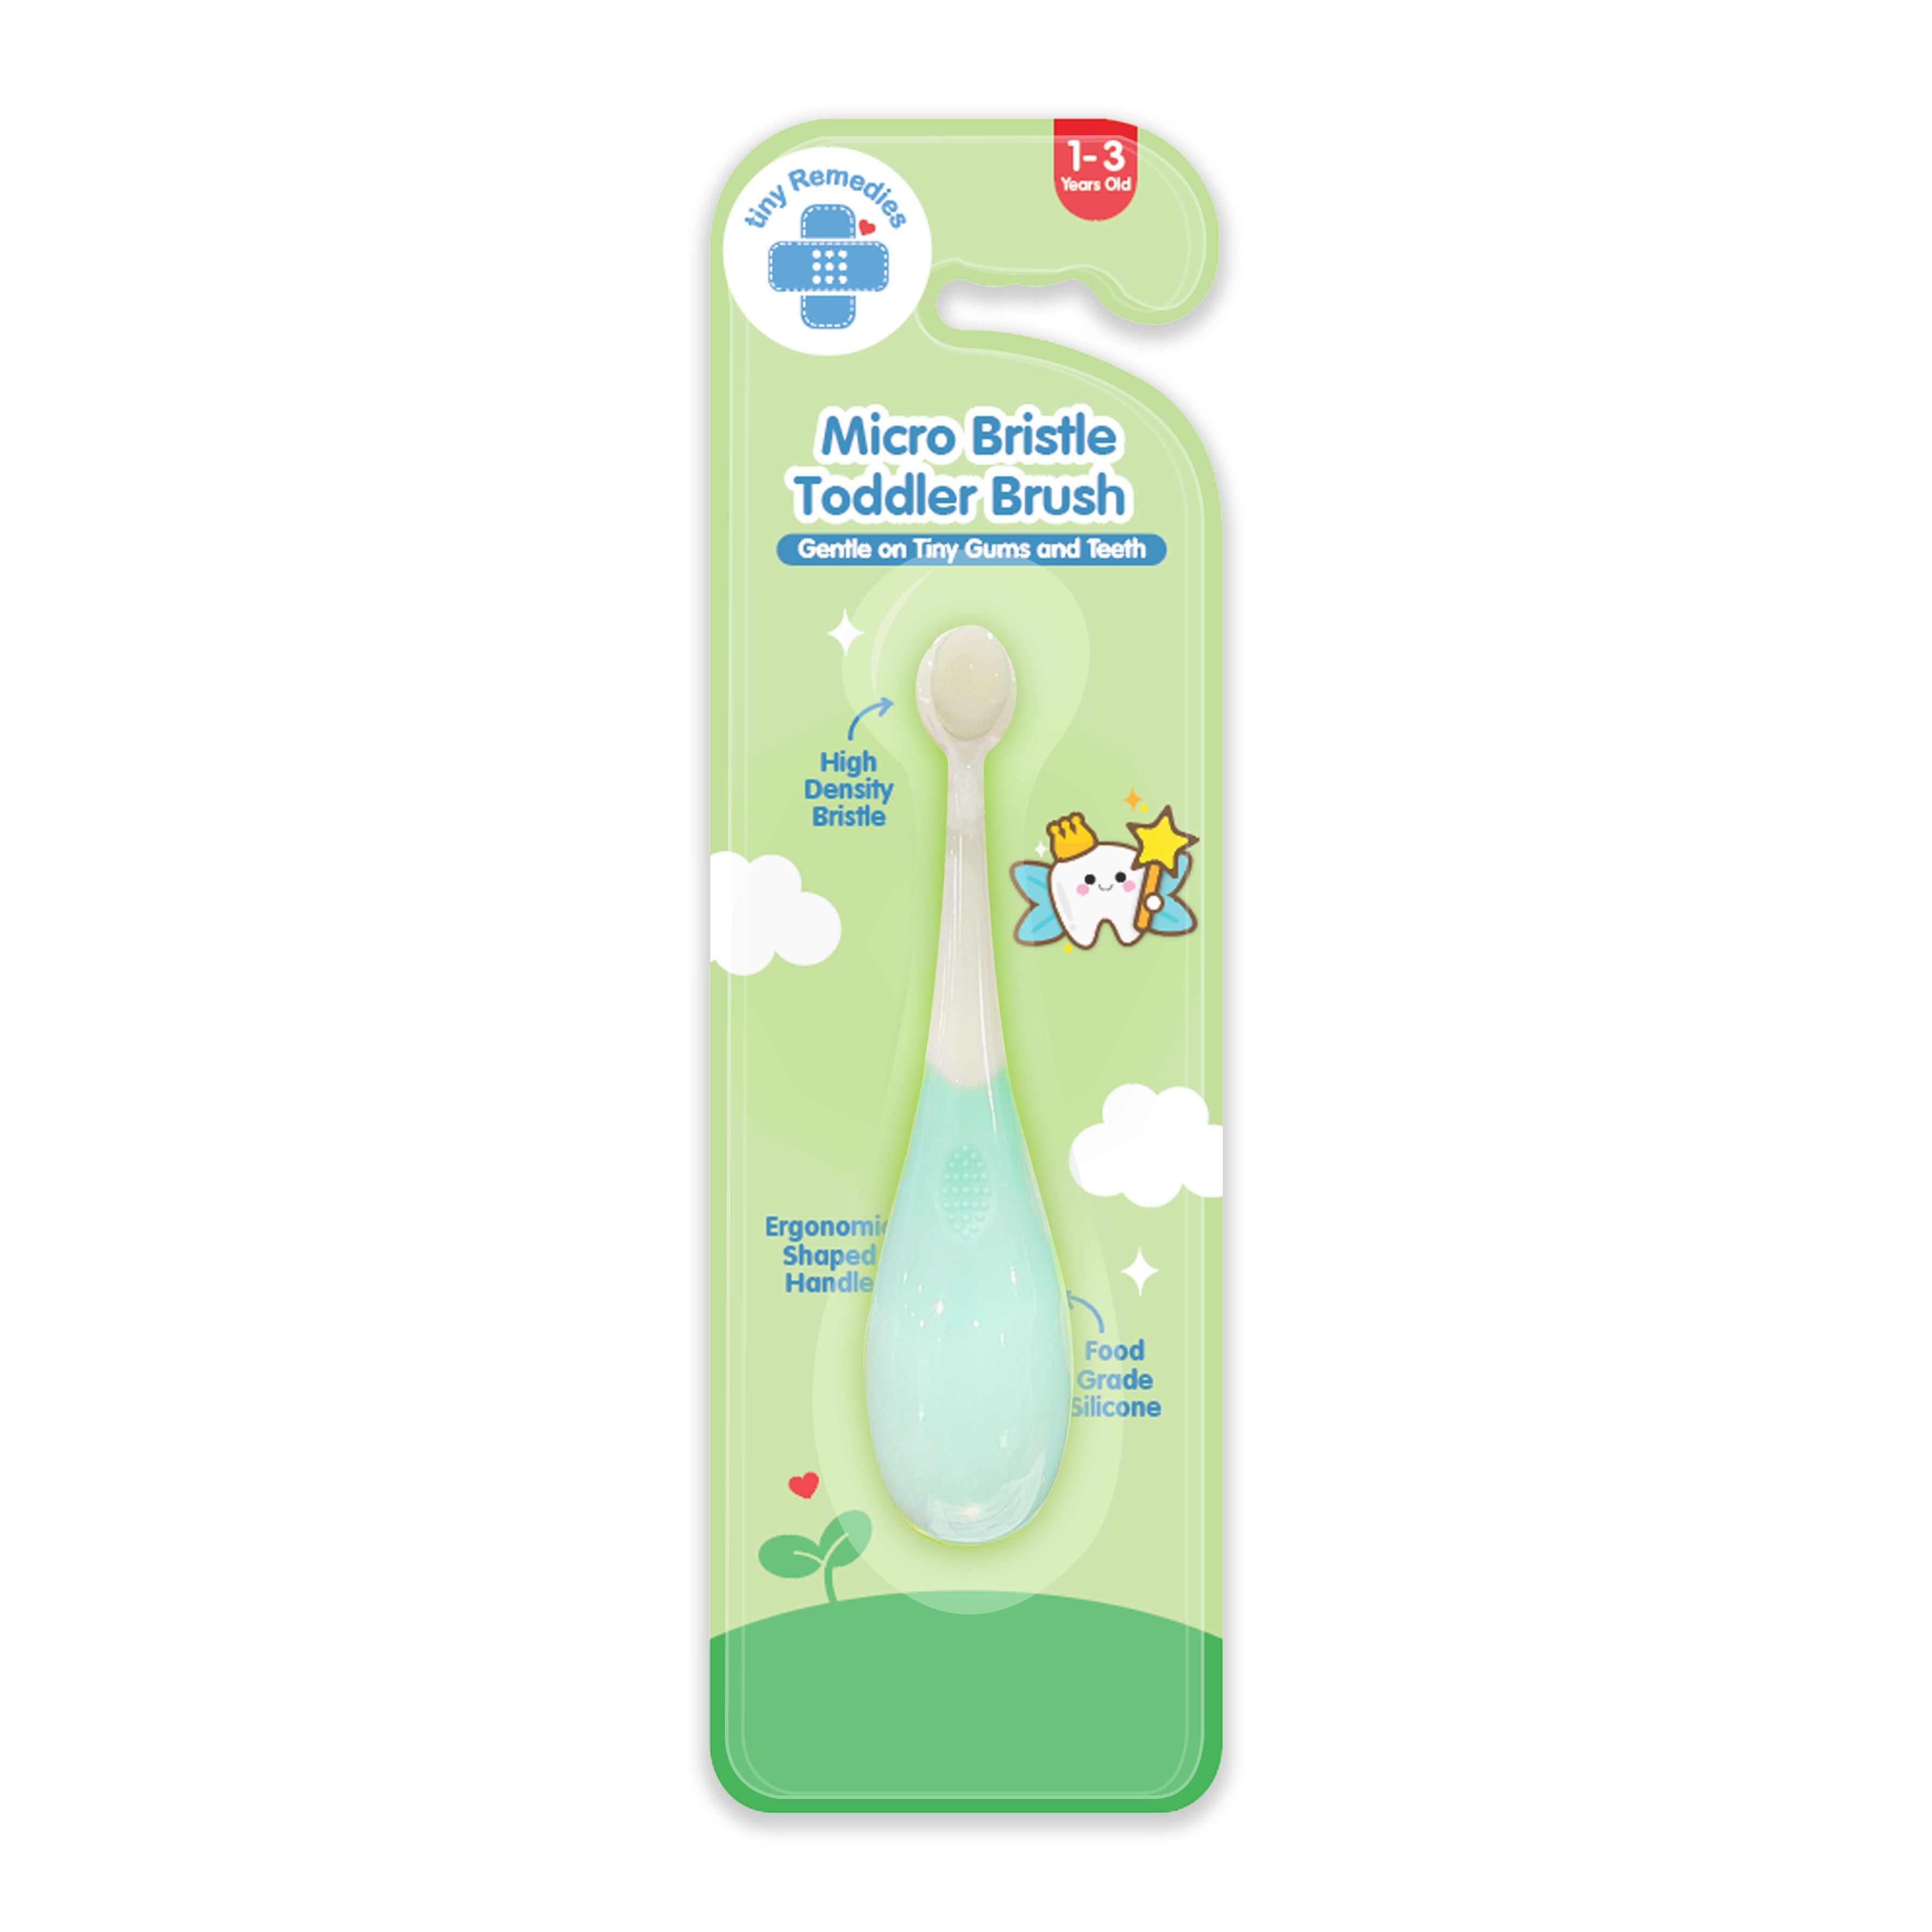 Micro Bristle Toddler Brush (1-3 Yrs Old)